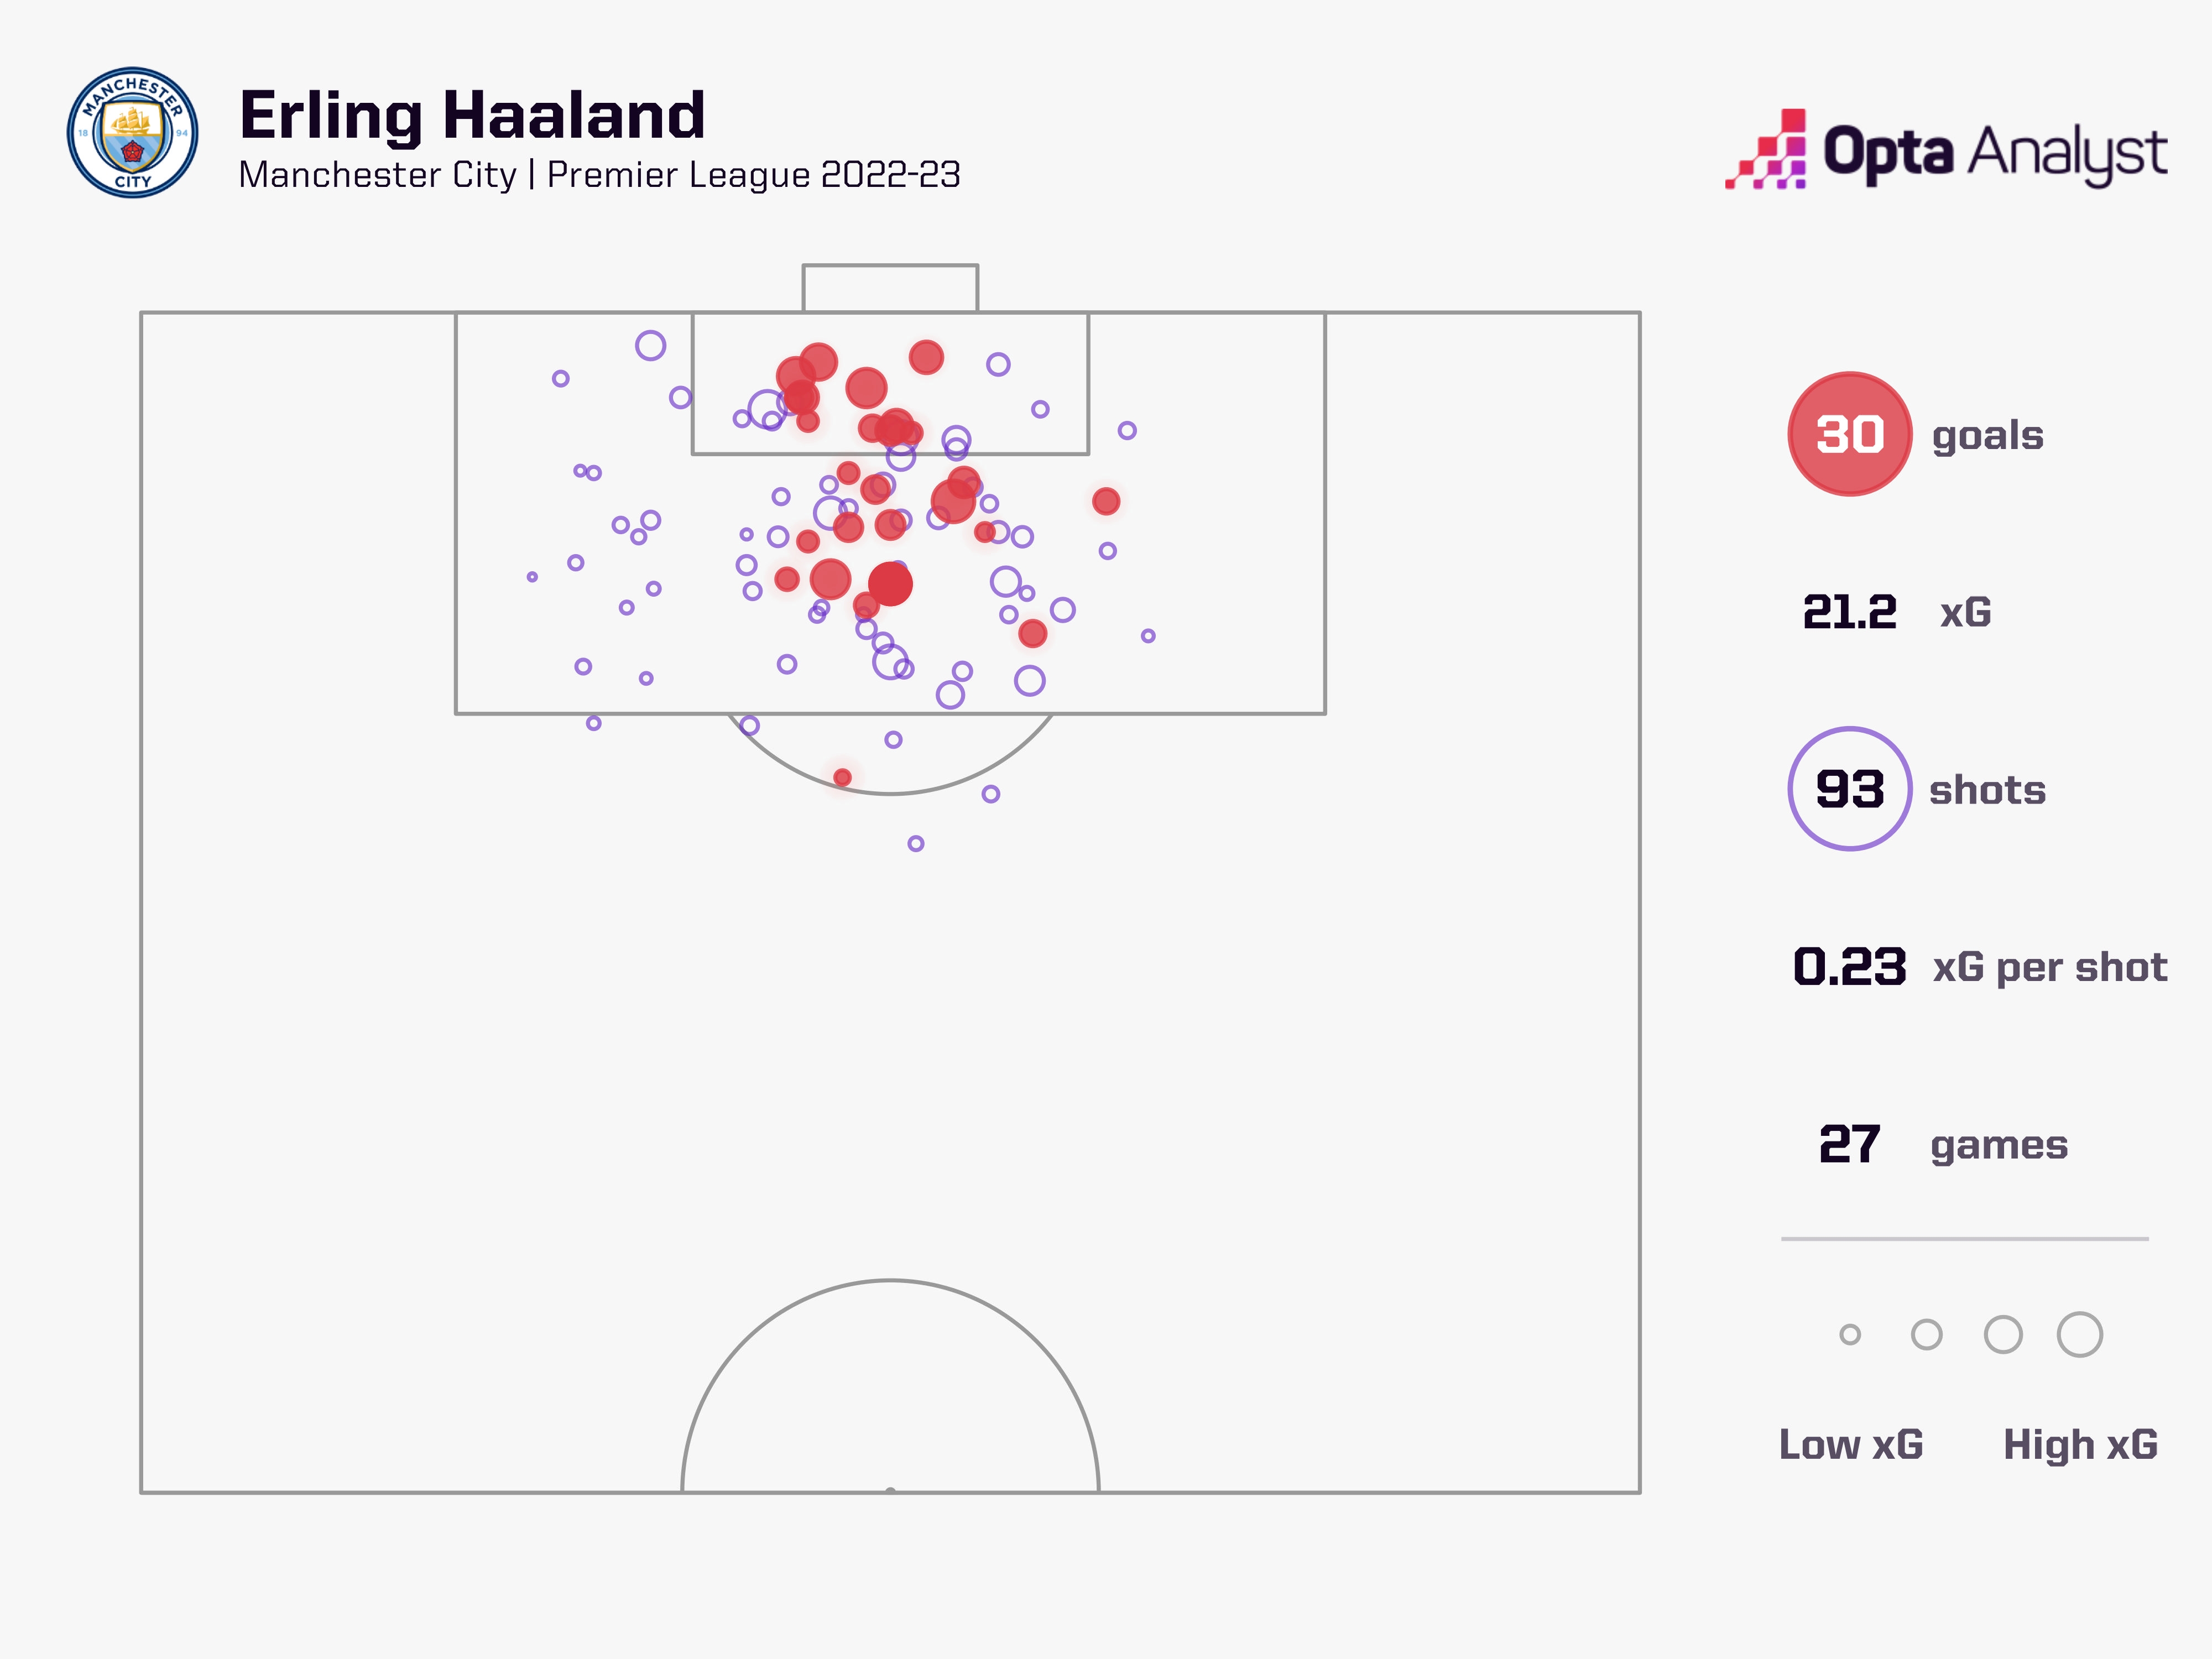 效率恐怖！哈兰德打进英超30球仅需93脚射门，预期进球数21.2